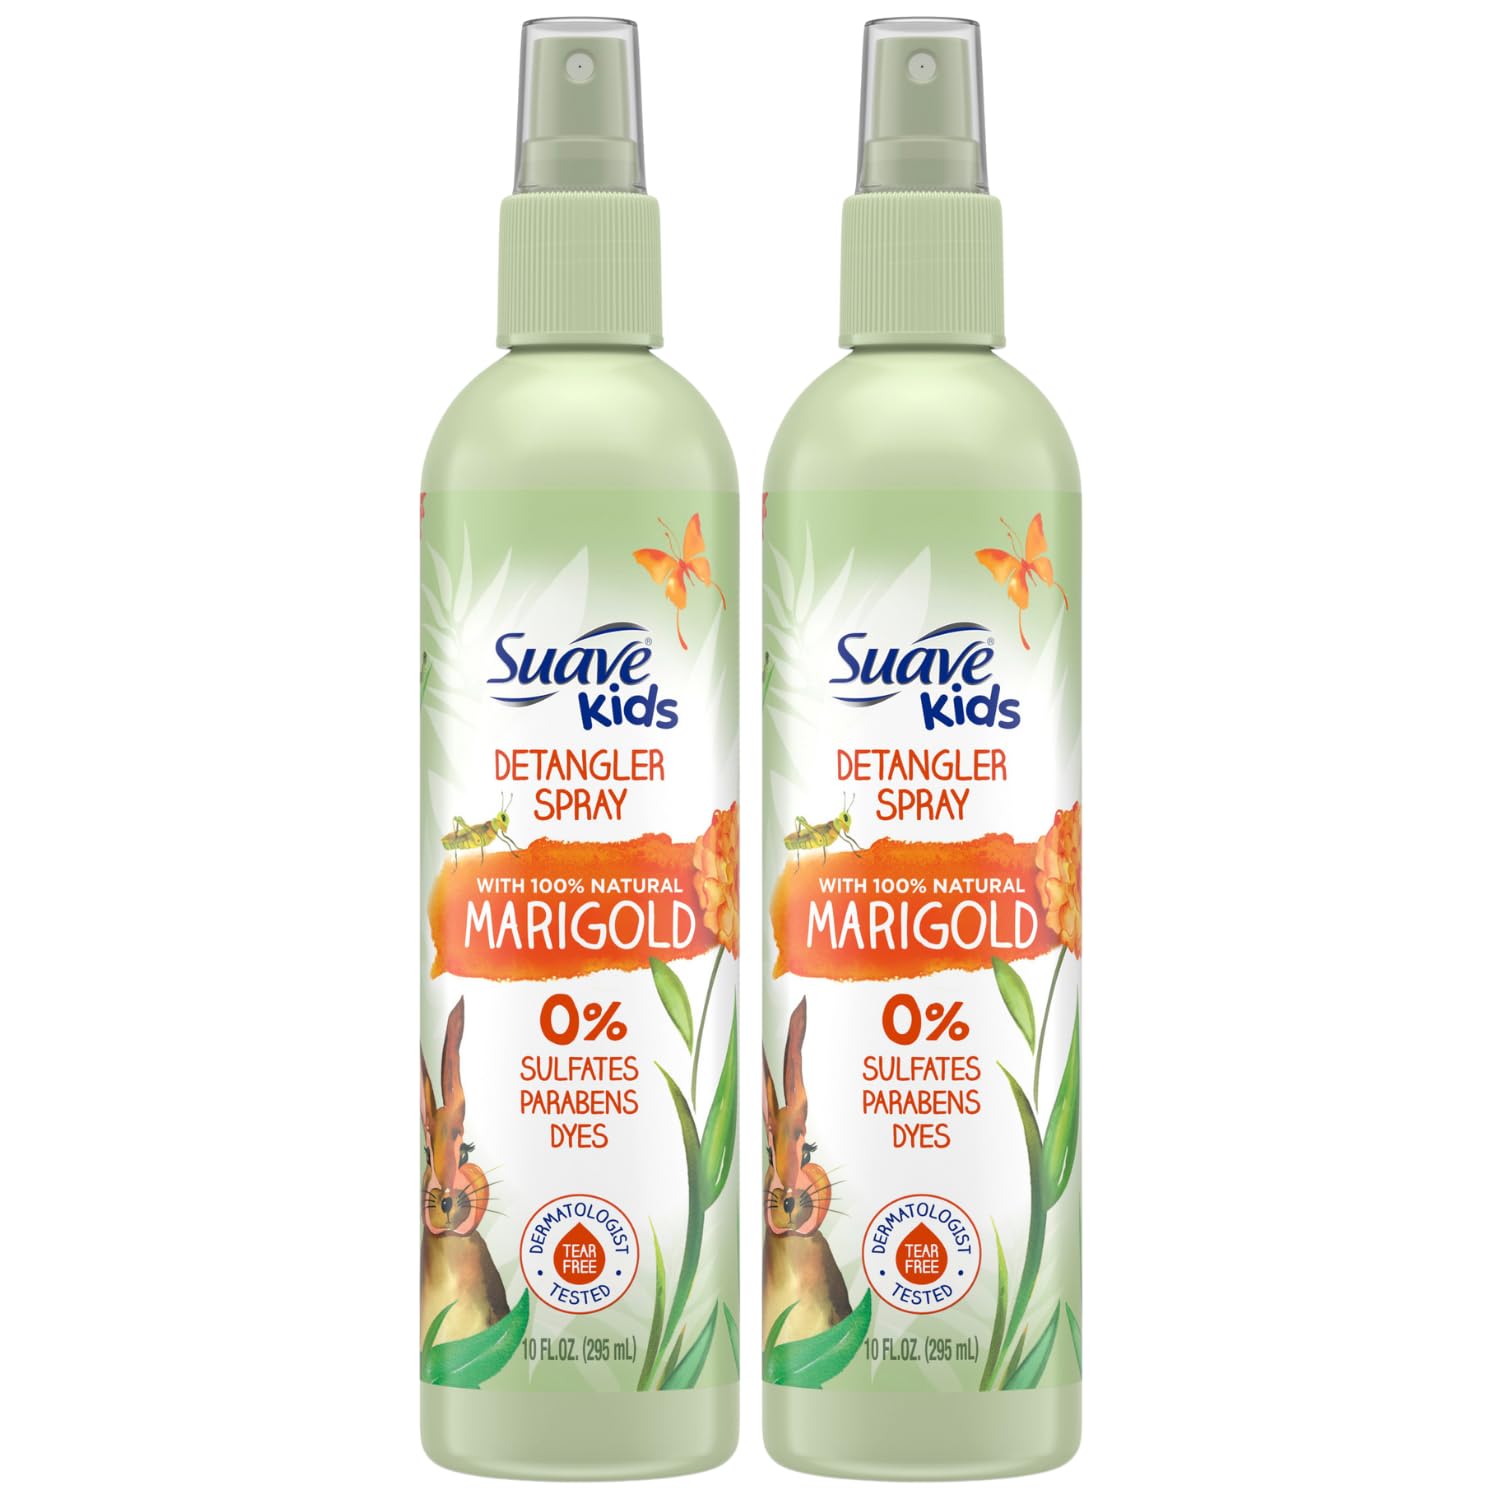 Suave Kids Detangler Spray, Natural Marigold – Tear-Free Hair Detangler Spray for Kids Hair Care, 10 Oz Ea (Pack of 2)